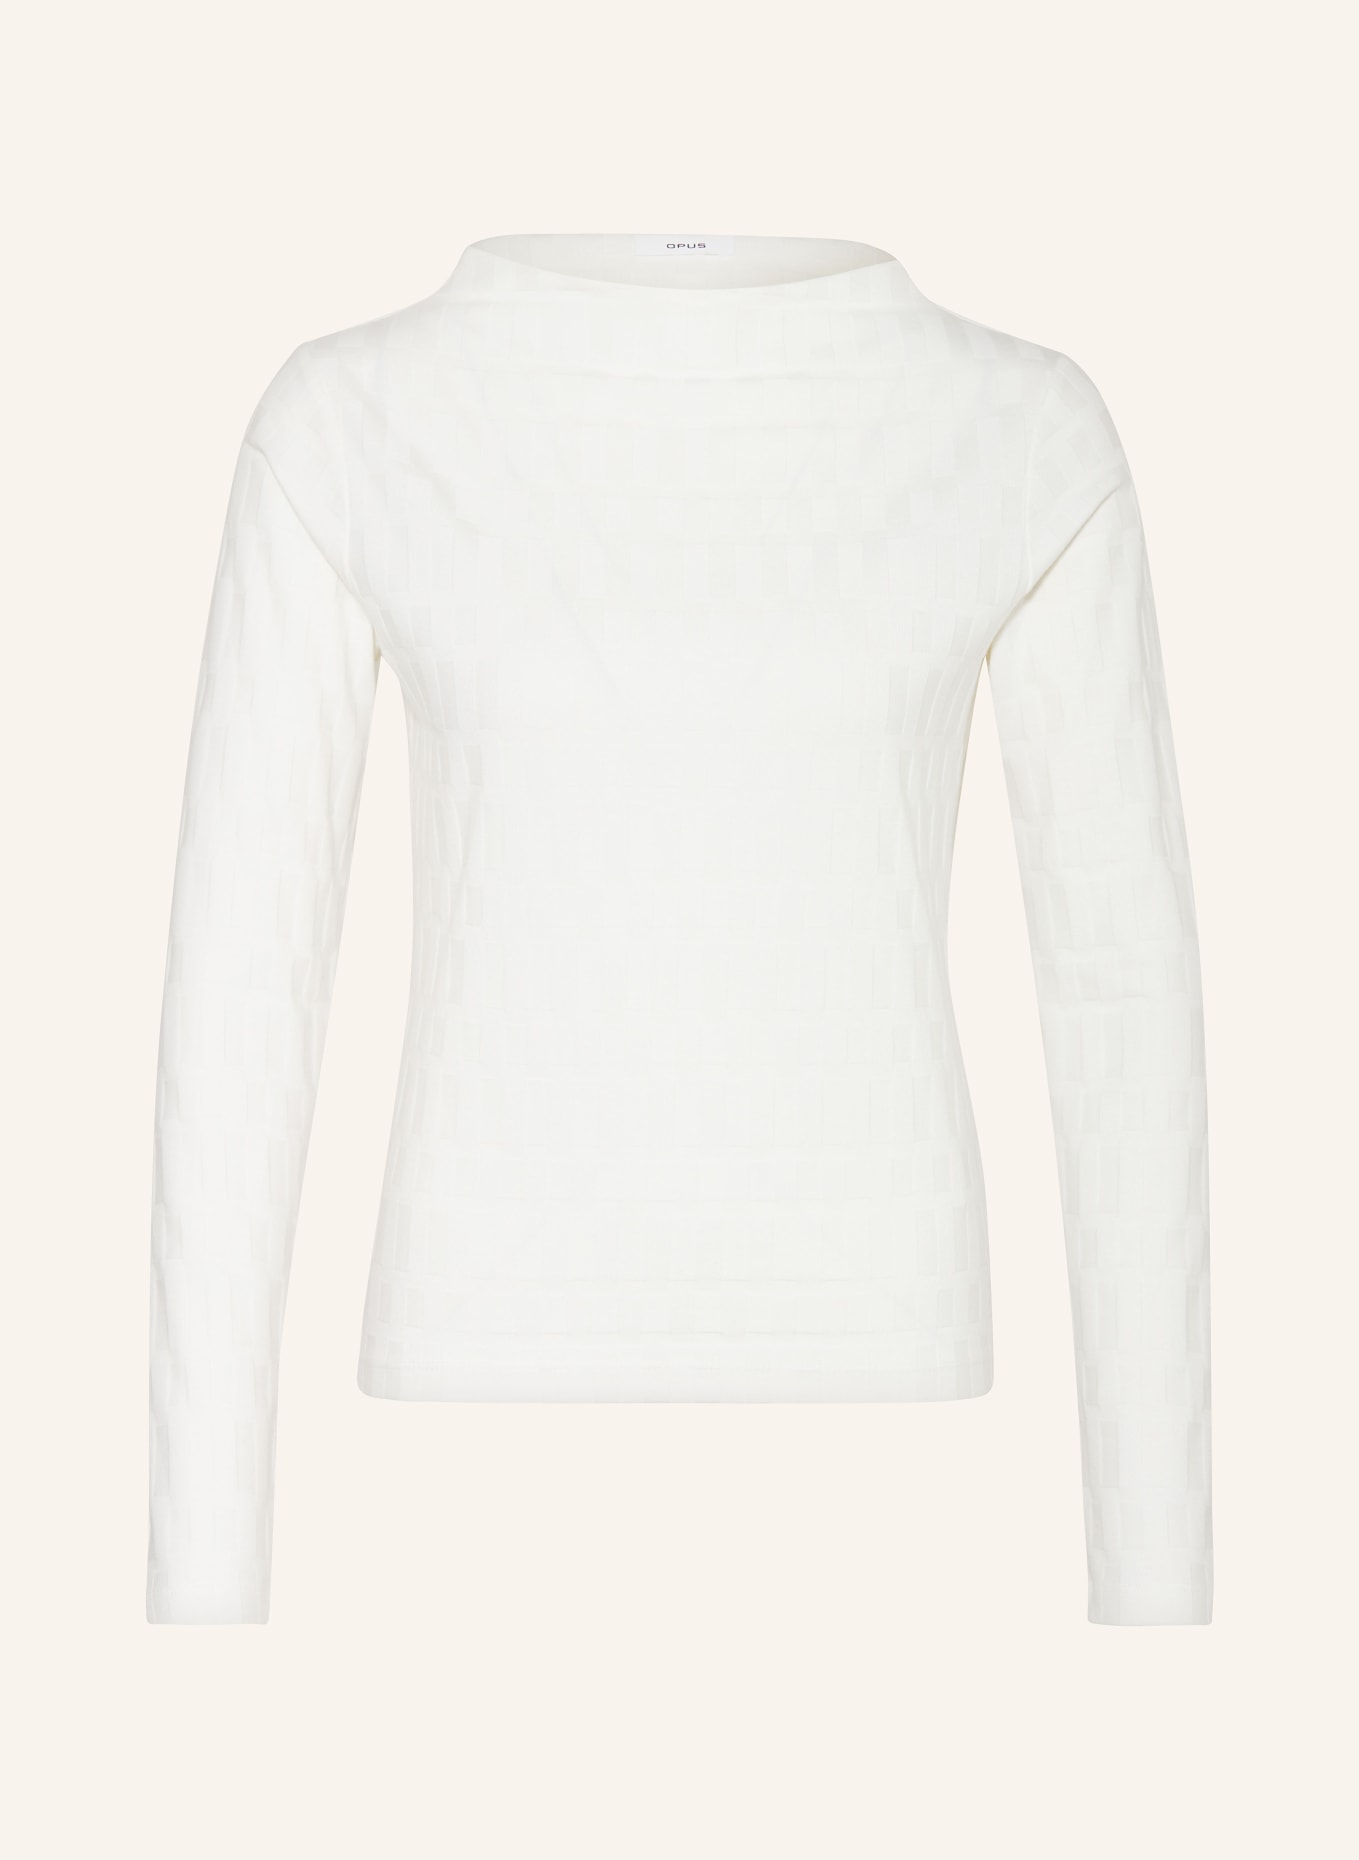 OPUS Long sleeve shirt SOLVENY, Color: WHITE (Image 1)